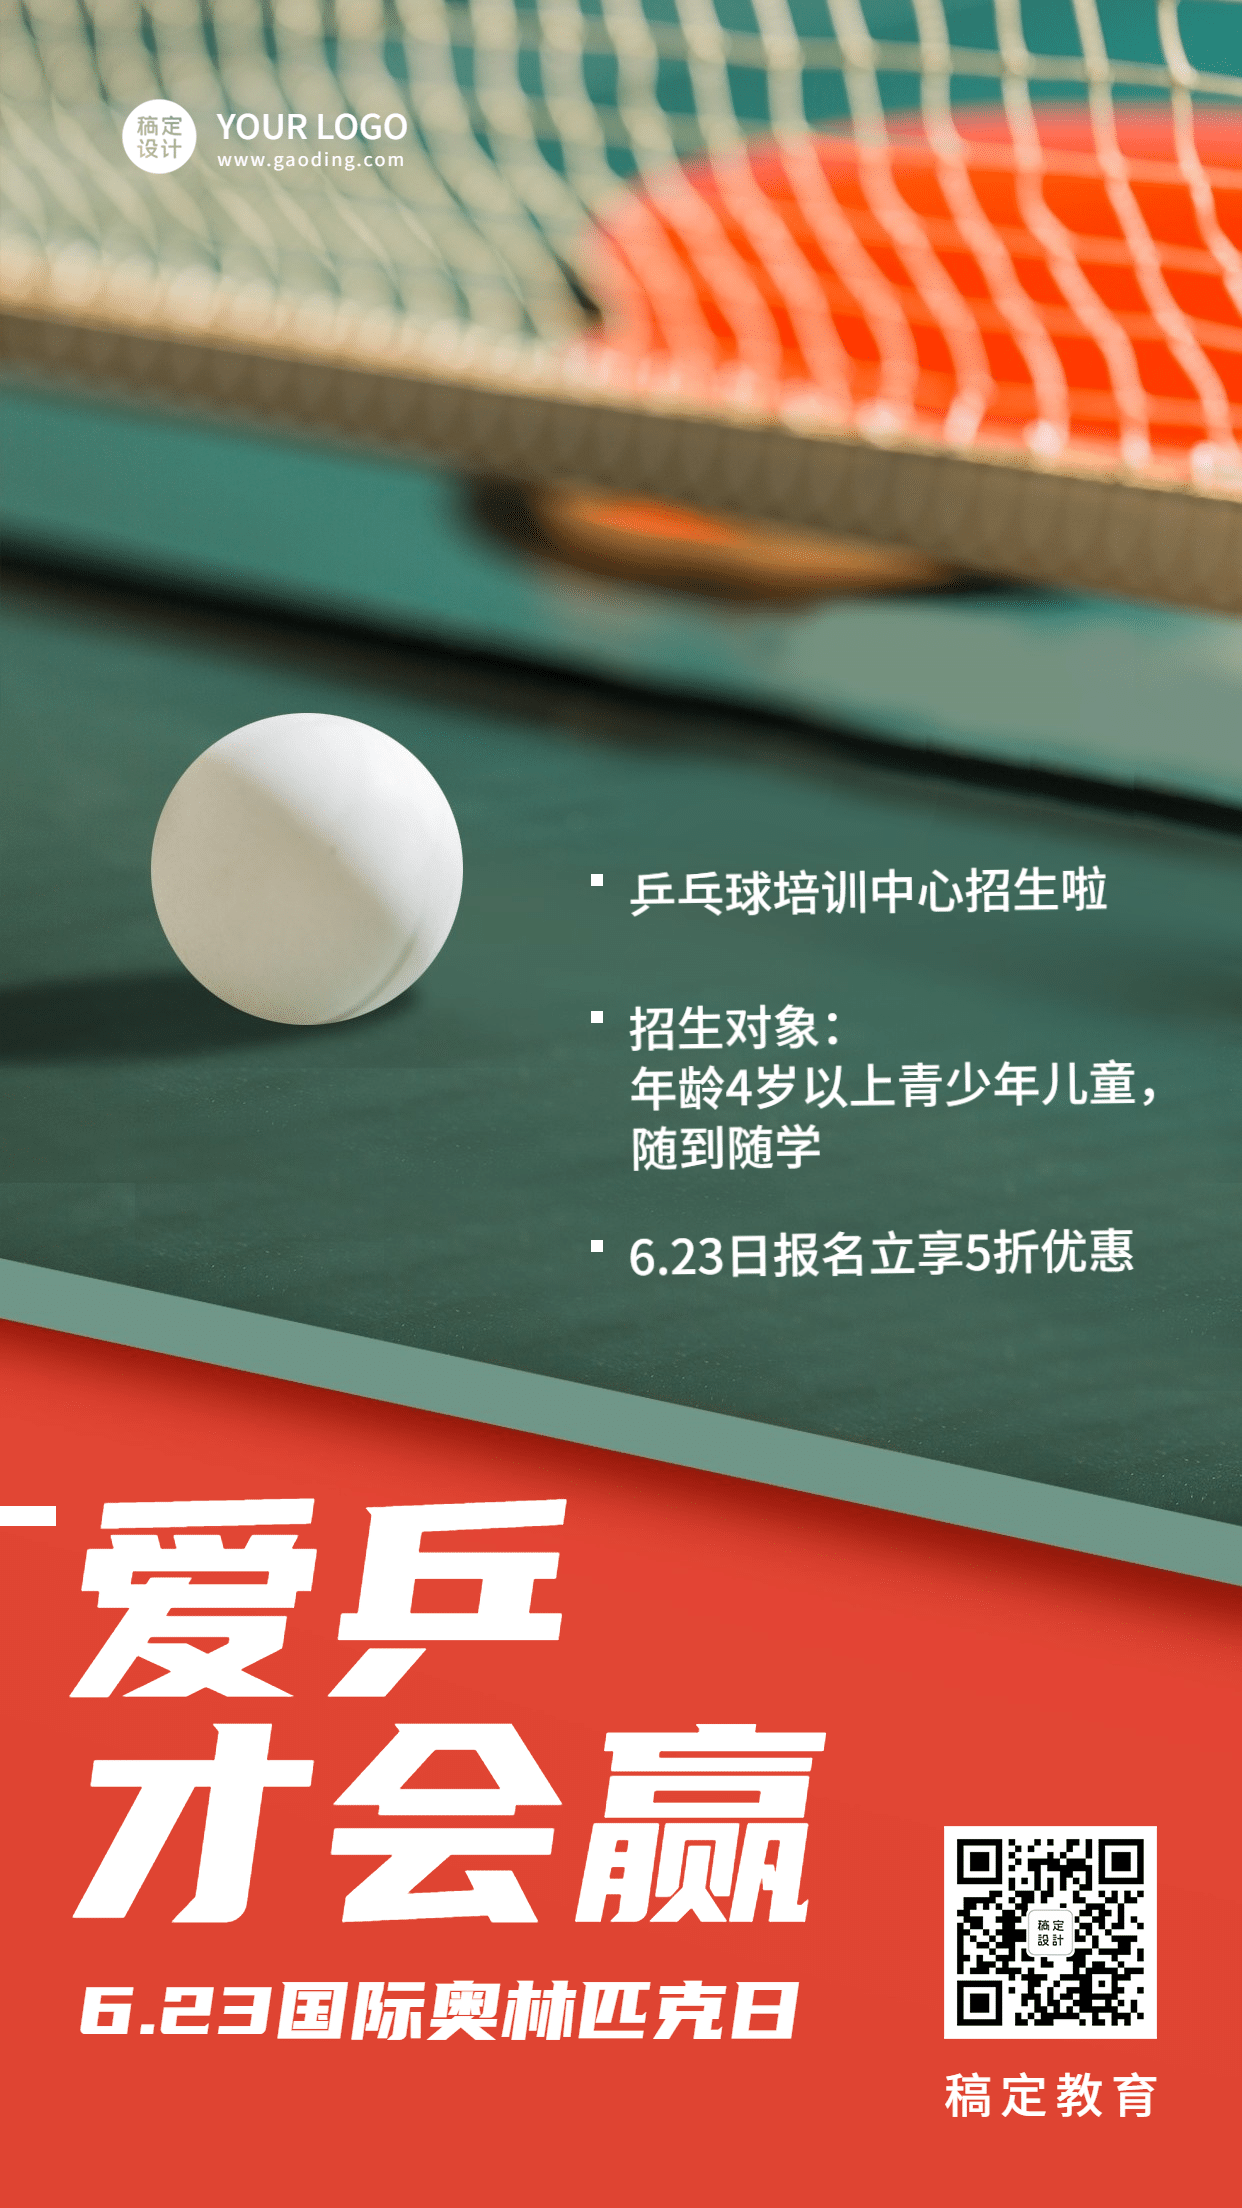 奥林匹克日乒乓课程促销手机海报预览效果